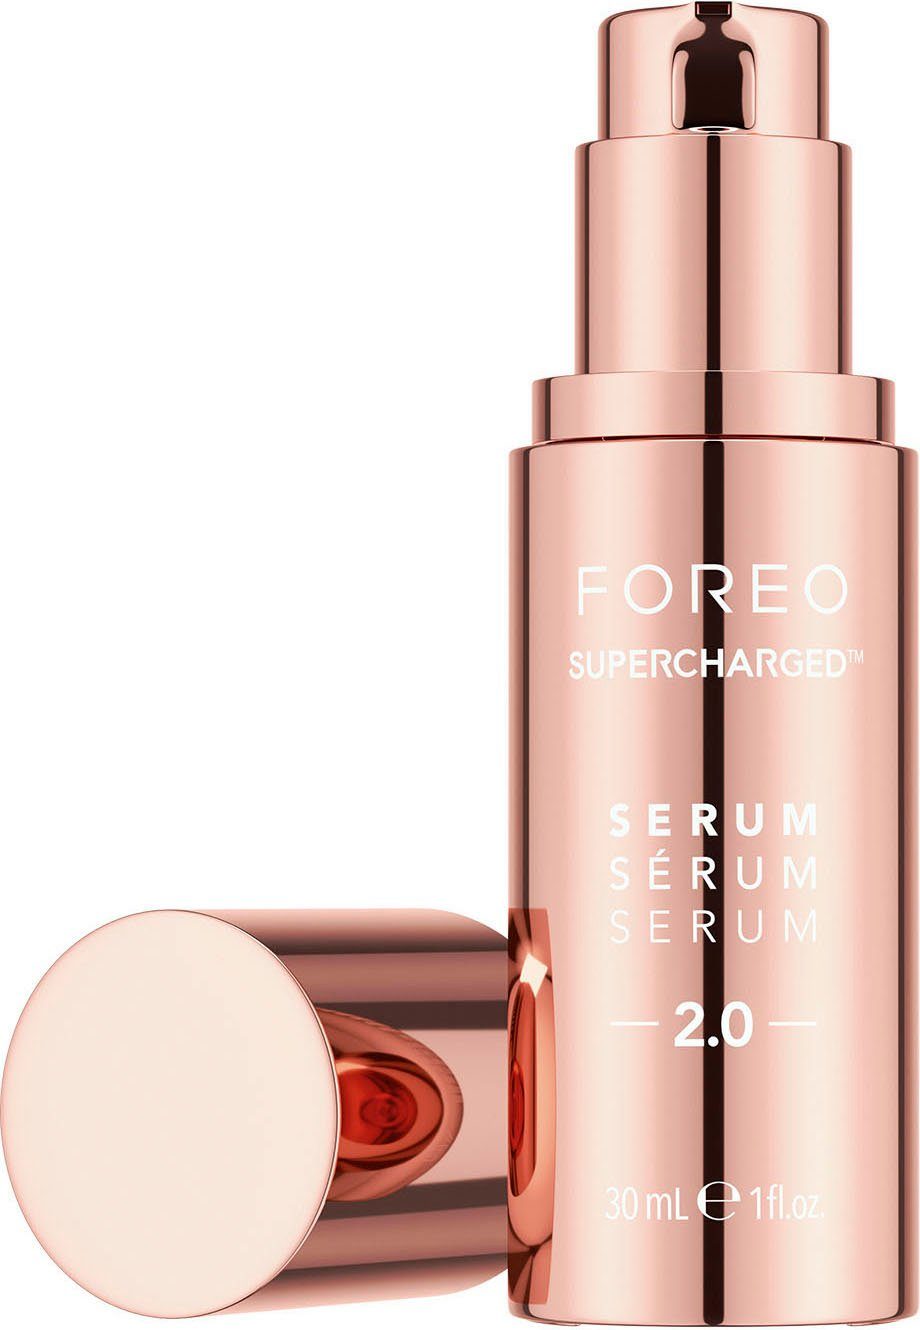 FOREO 2.0 SUPERCHARGED™ 30 ml SÉRUM Gesichtsserum SERUM SERUM